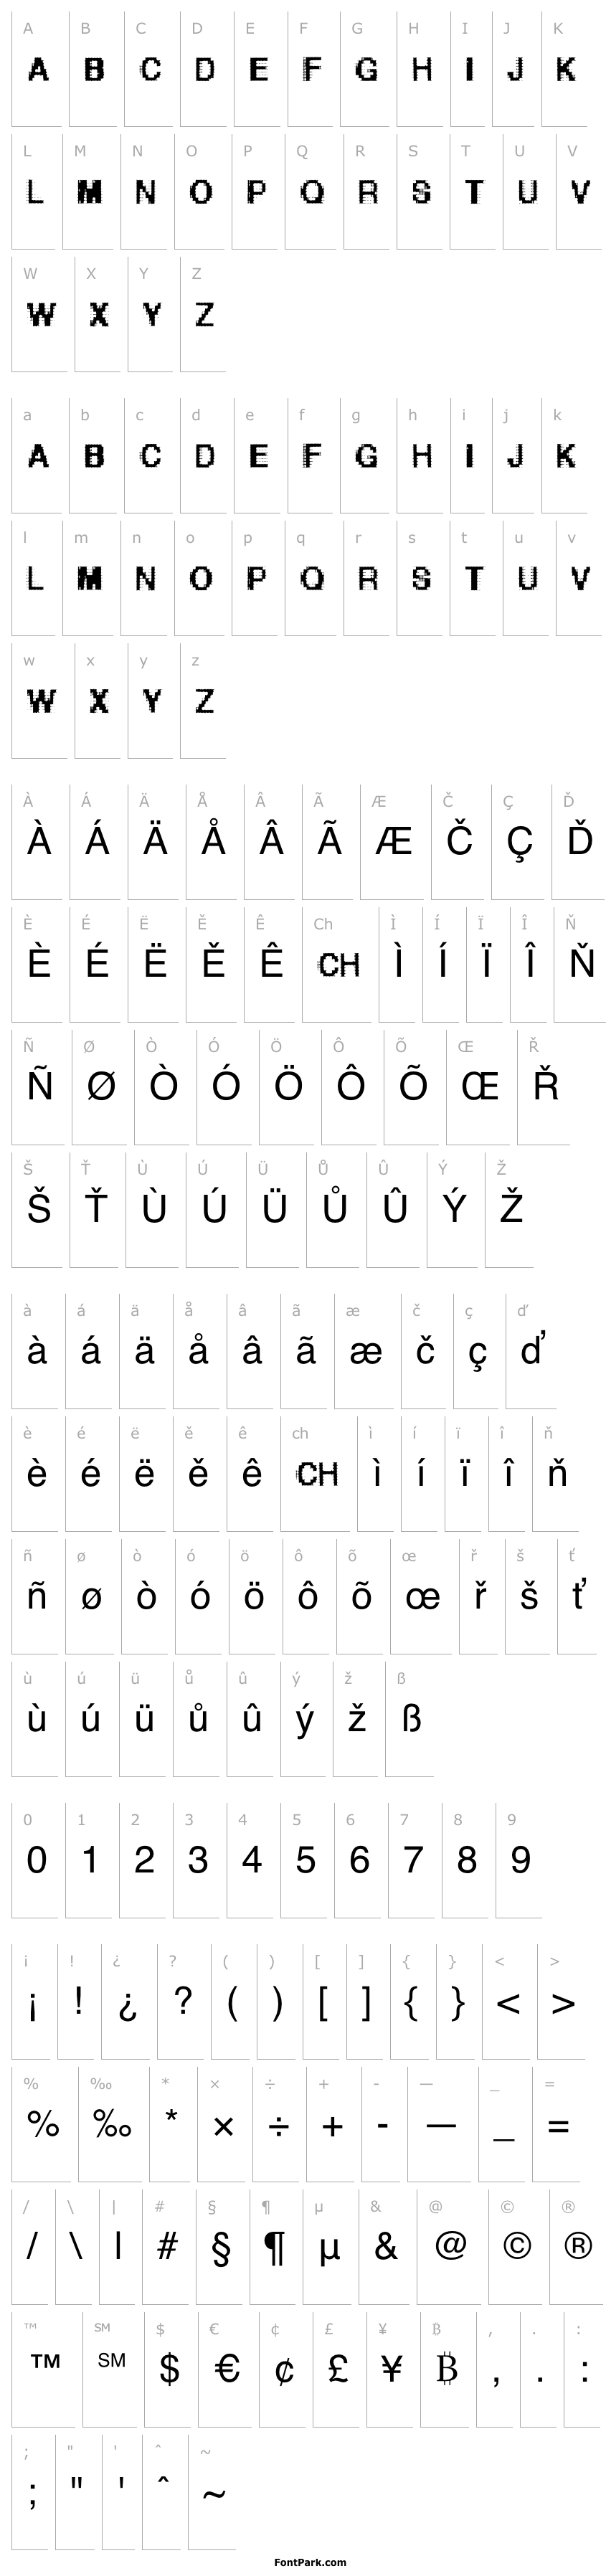 Overview Helvetica-grosse-bit